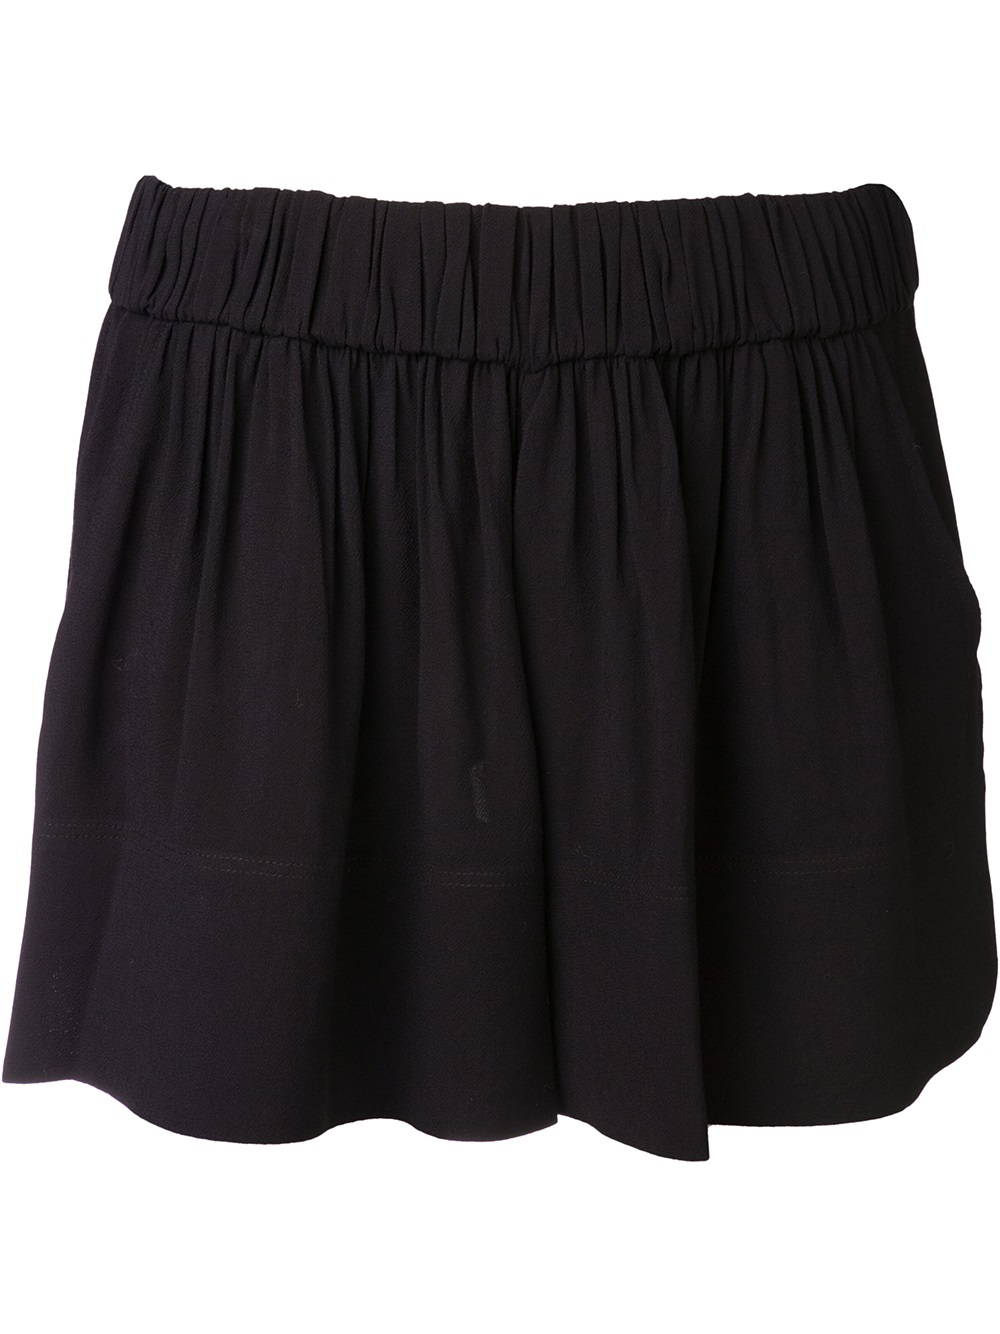 Lyst - Iro Flowy Shorts in Black